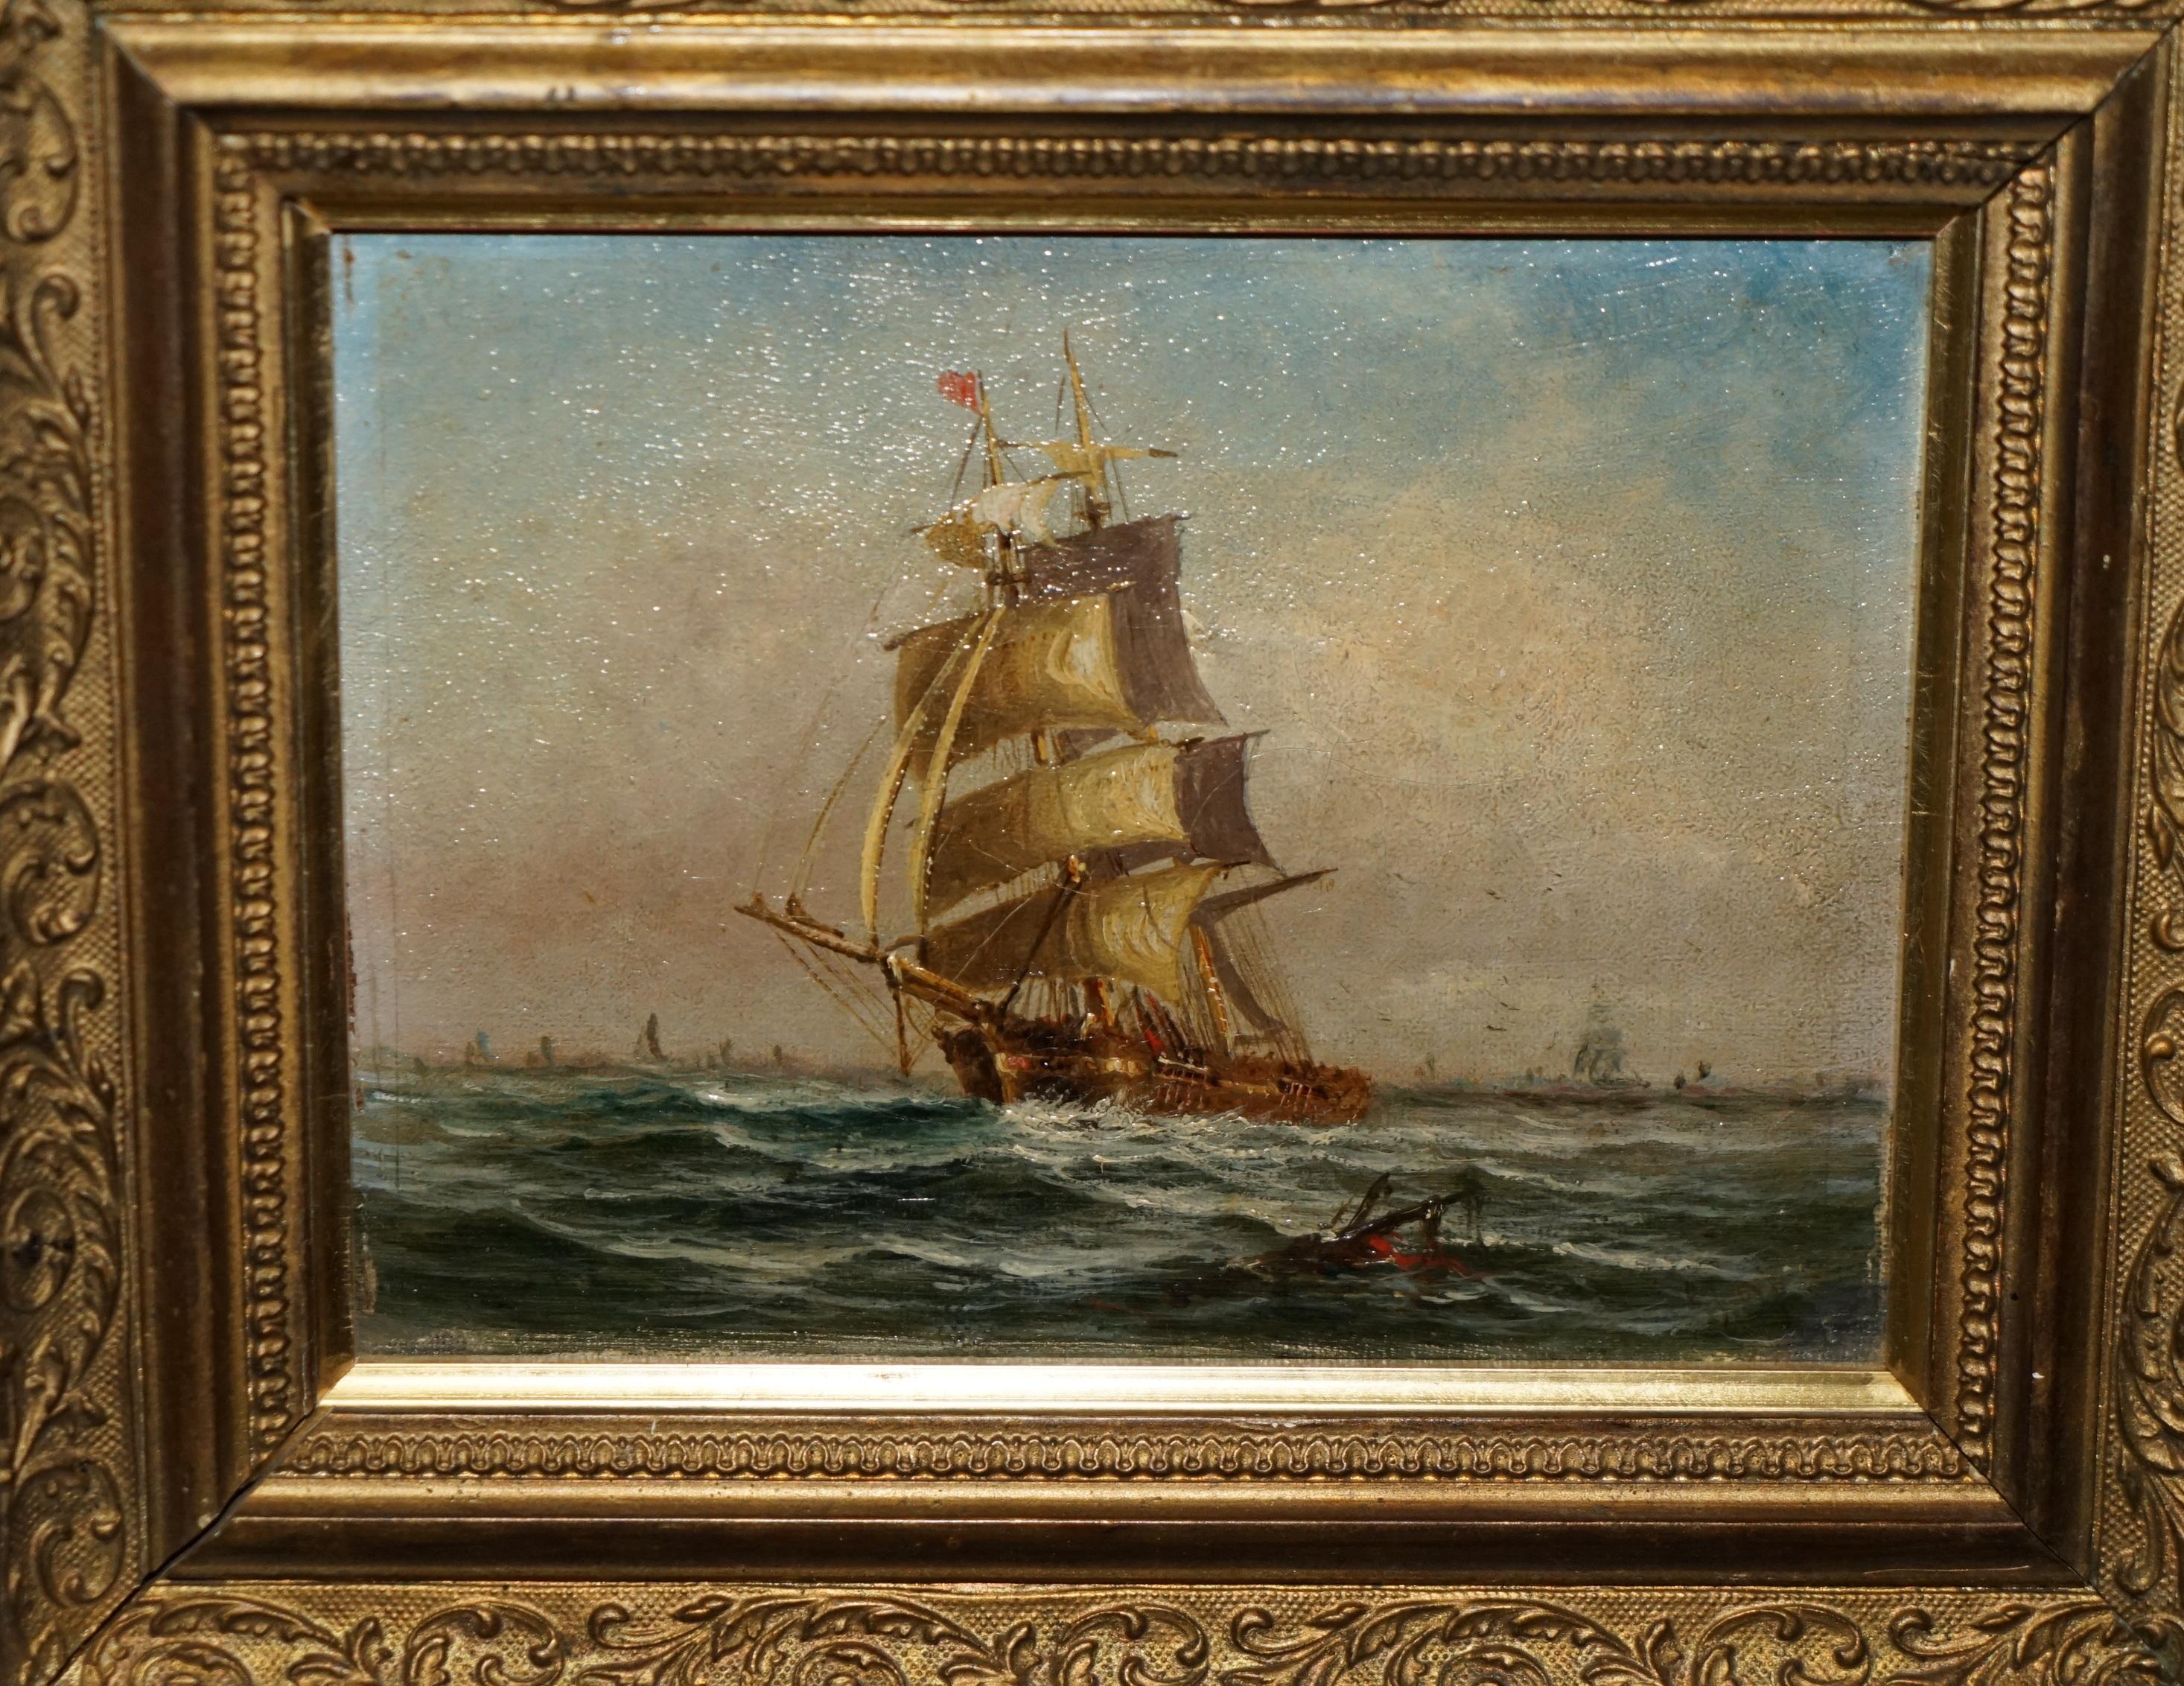 Royal House Antiques

Nous sommes ravis de proposer à la vente cette superbe peinture à l'huile originale datant d'environ 1880 et représentant un navire du début du 19e siècle. 

Une peinture très belle et merveilleusement exécutée, qui donne un